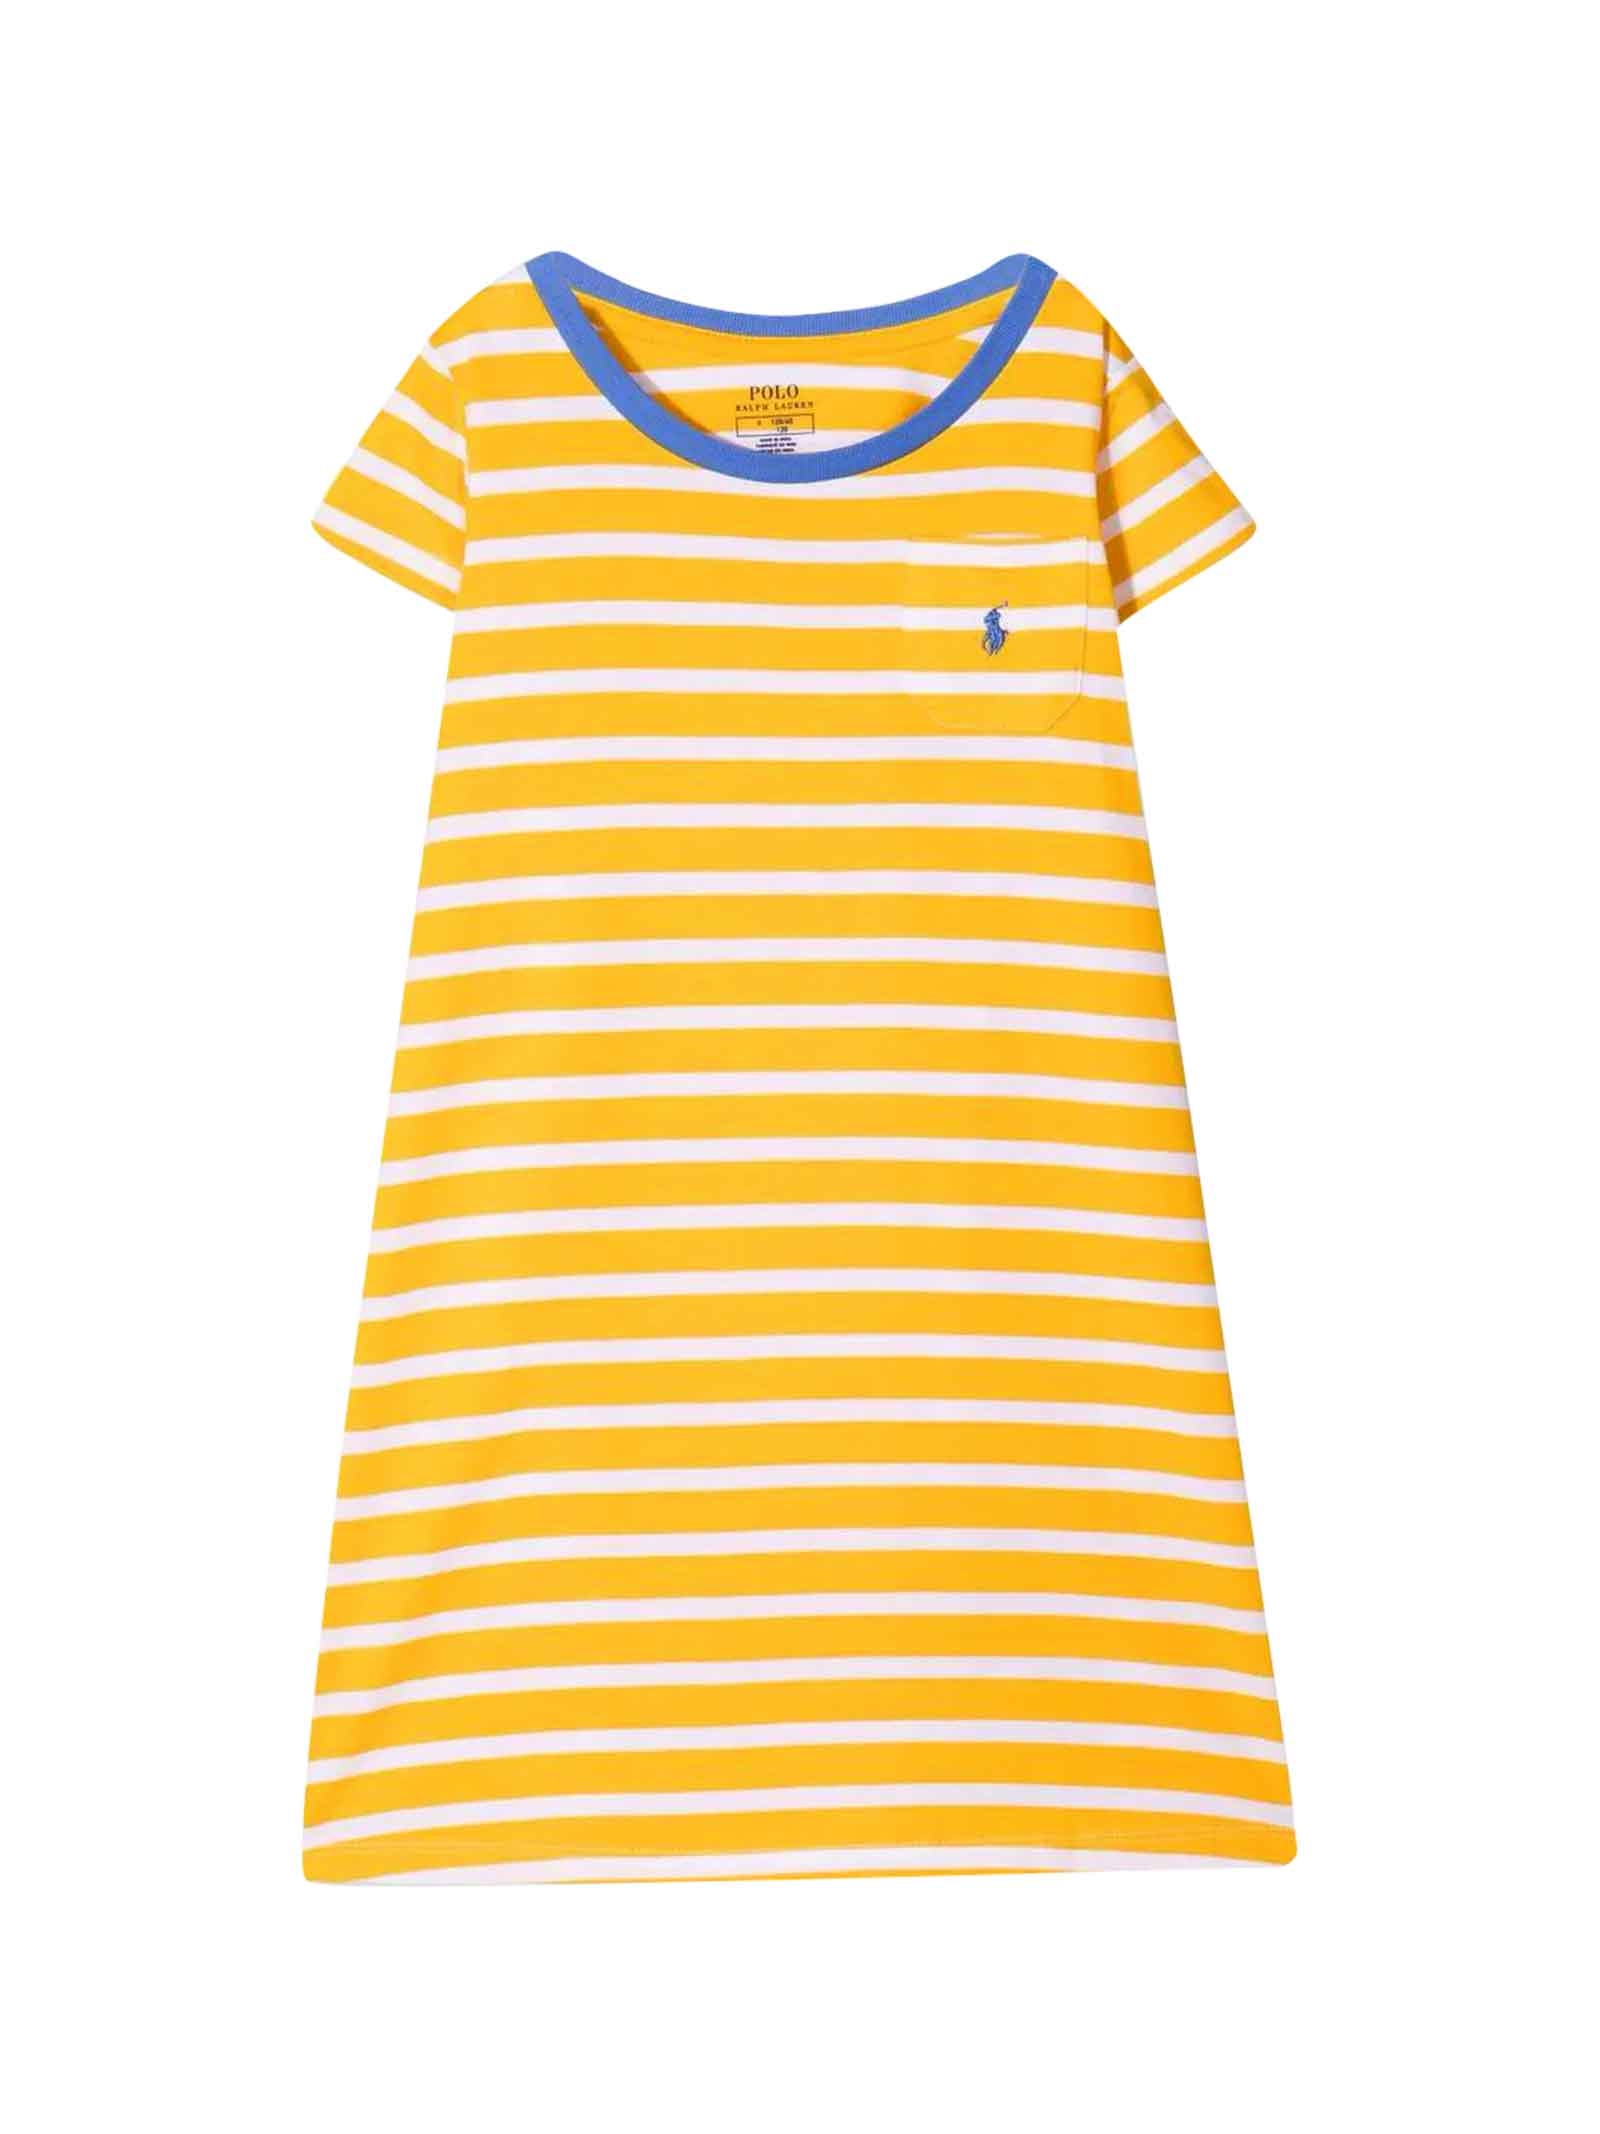 Ralph Lauren Girls Yellow And Blue Striped Dress